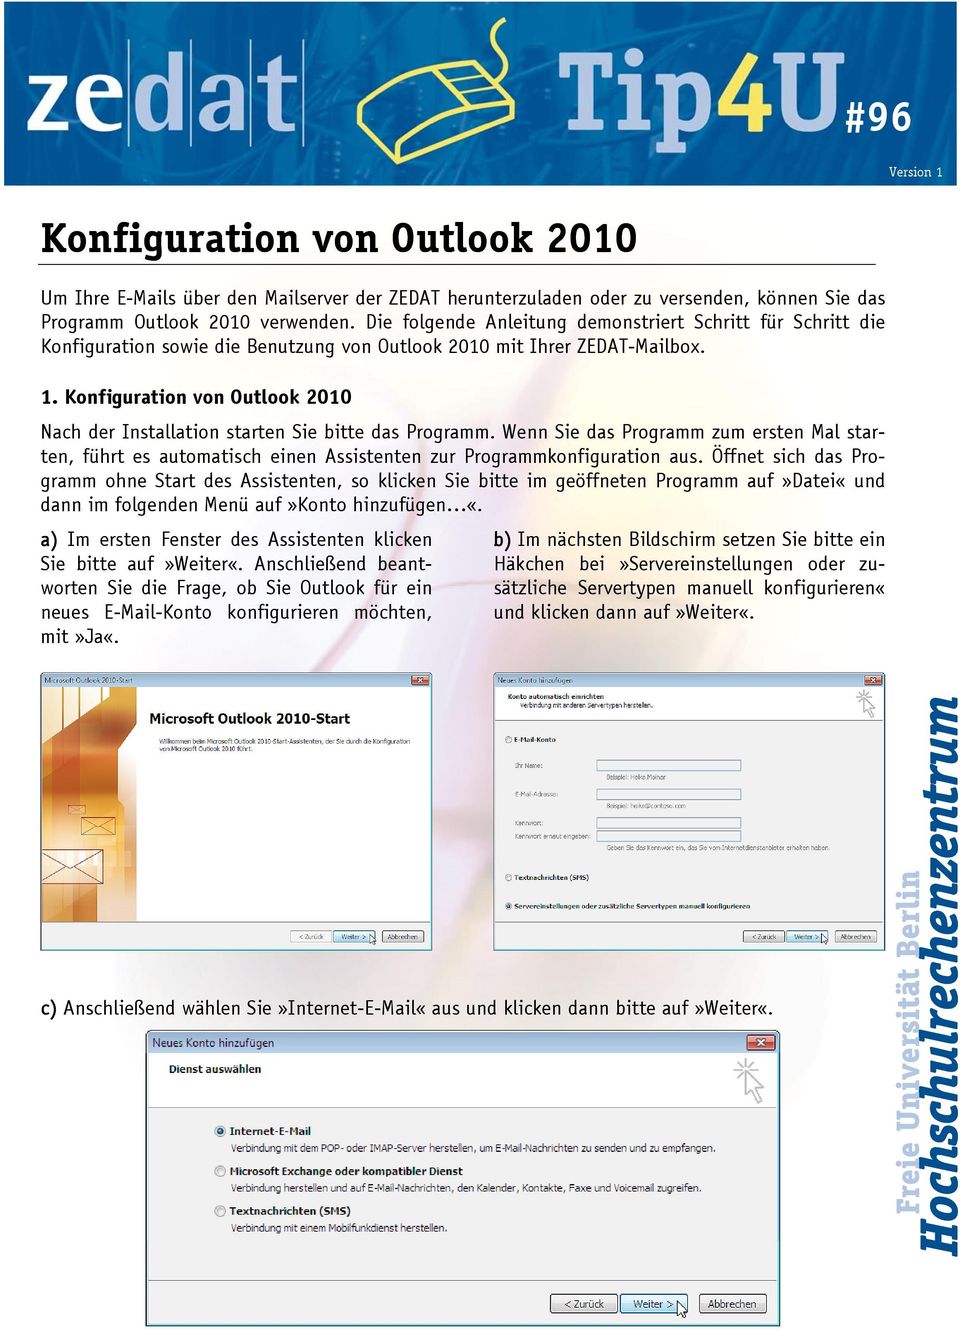 Konfiguration von Outlook 2010 Nach der Installation starten Sie bitte das Programm. Wenn Sie das Programm zum ersten Mal starten, führt es automatisch einen Assistenten zur Programmkonfiguration aus.